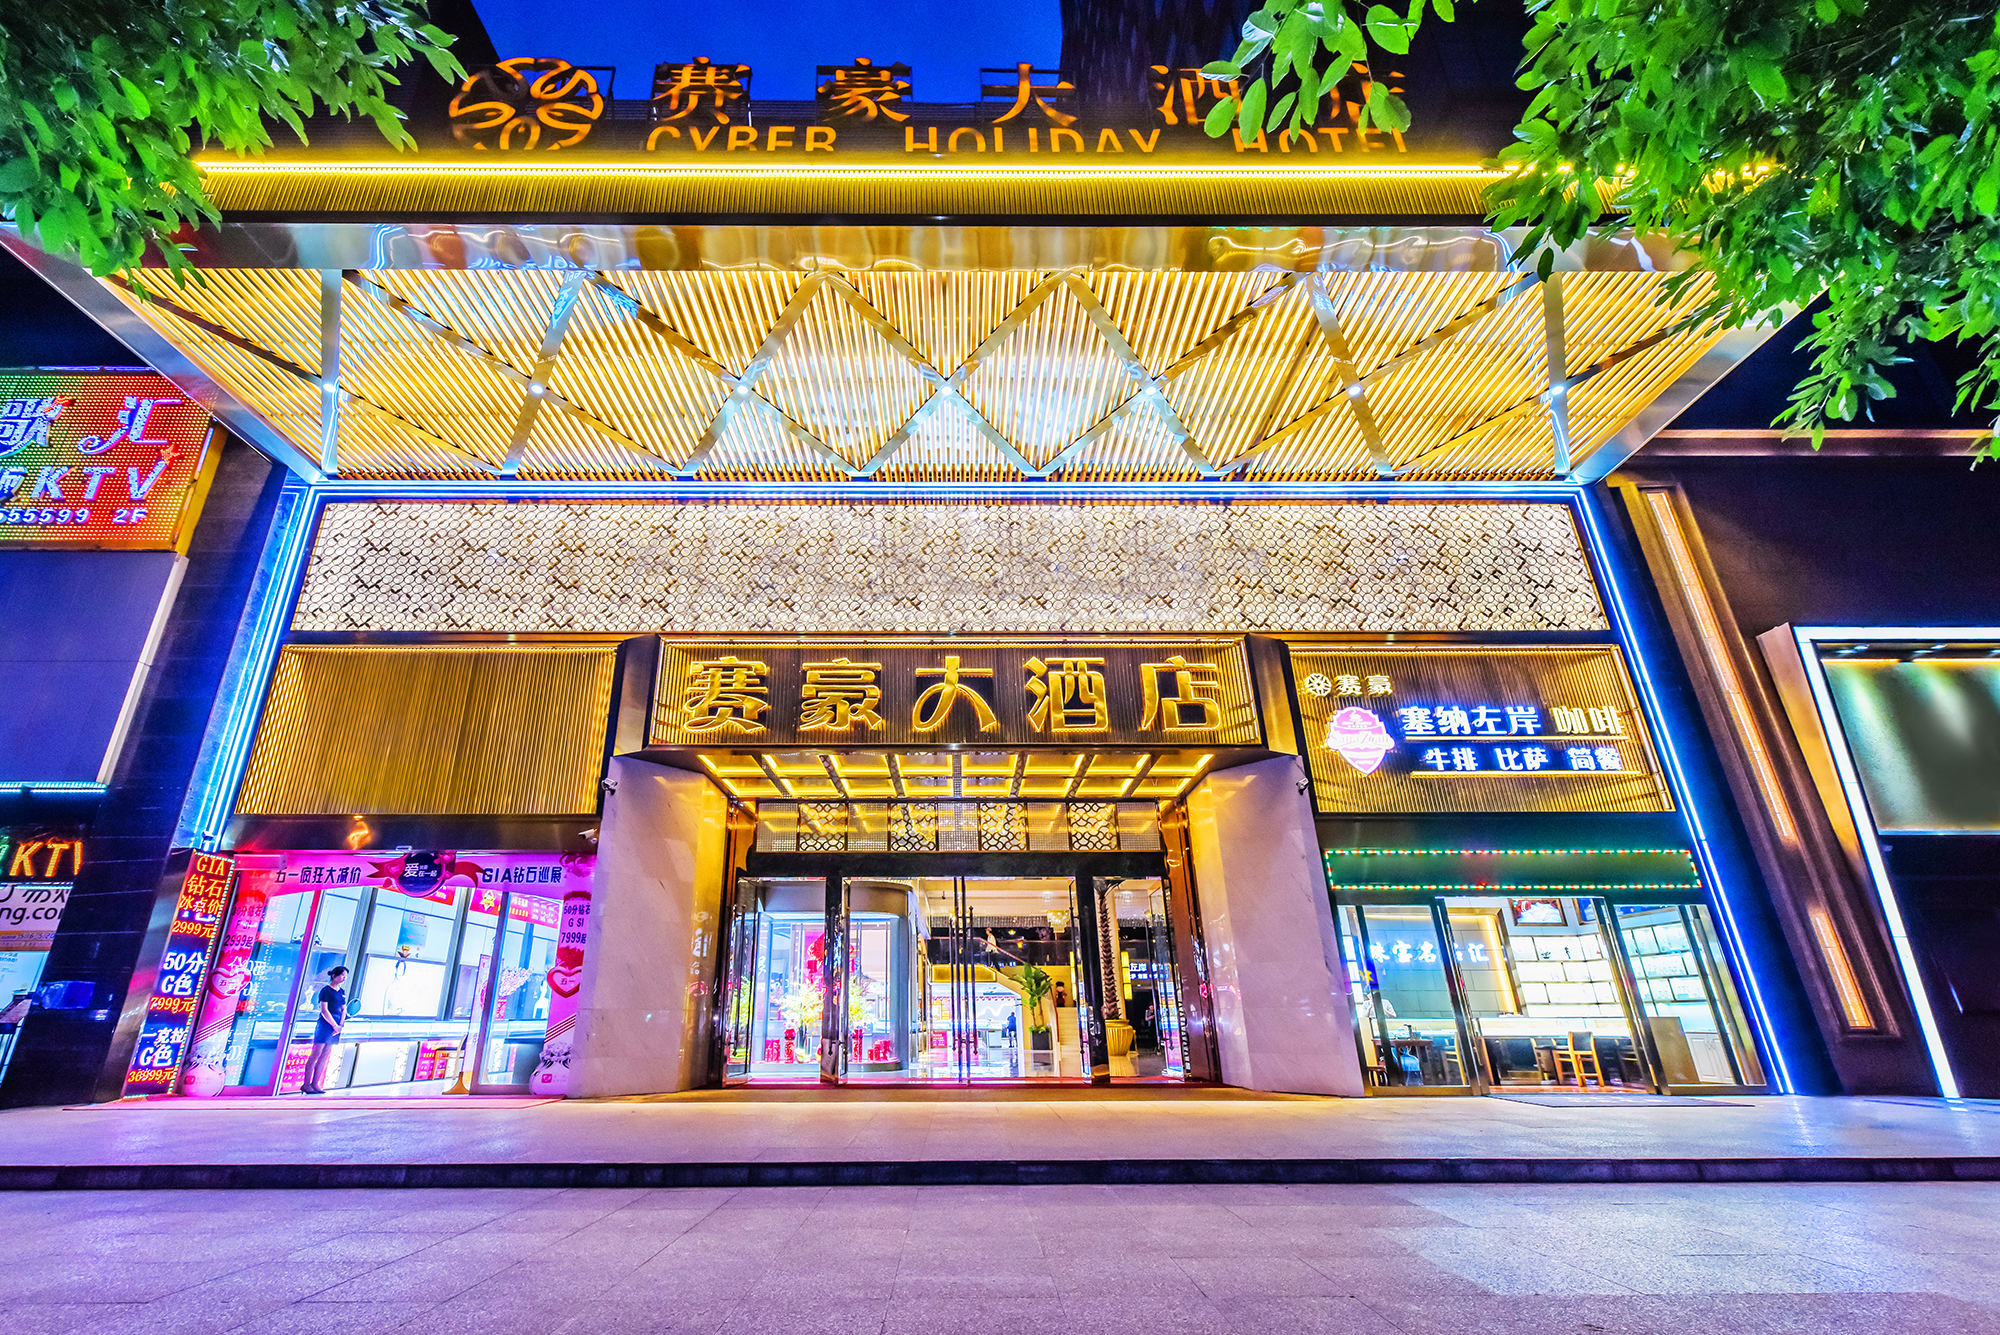 重庆赛豪大酒店有限责任公司 环境照片活动图片